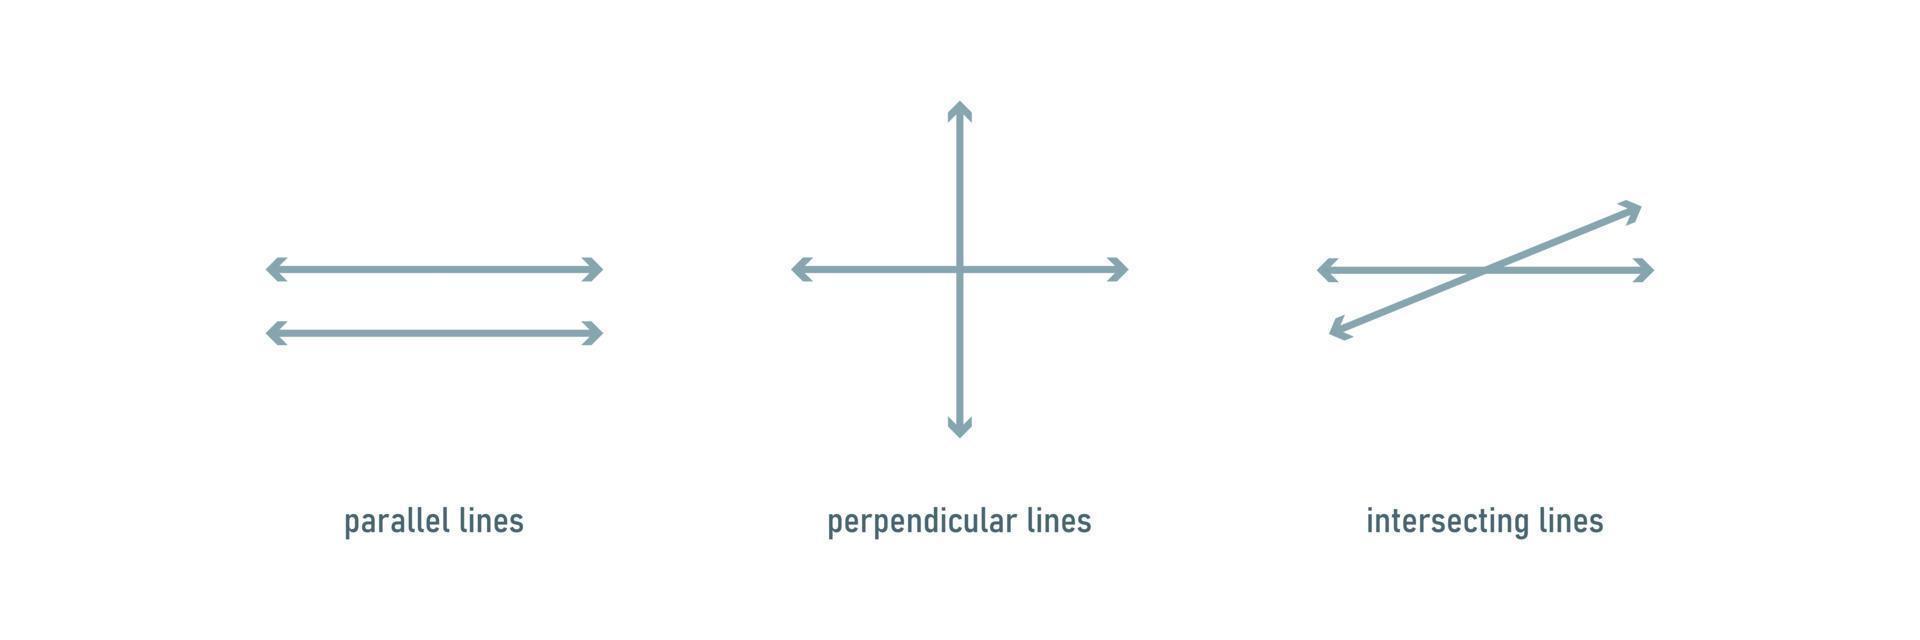 Type of lines. School education.Vector vector